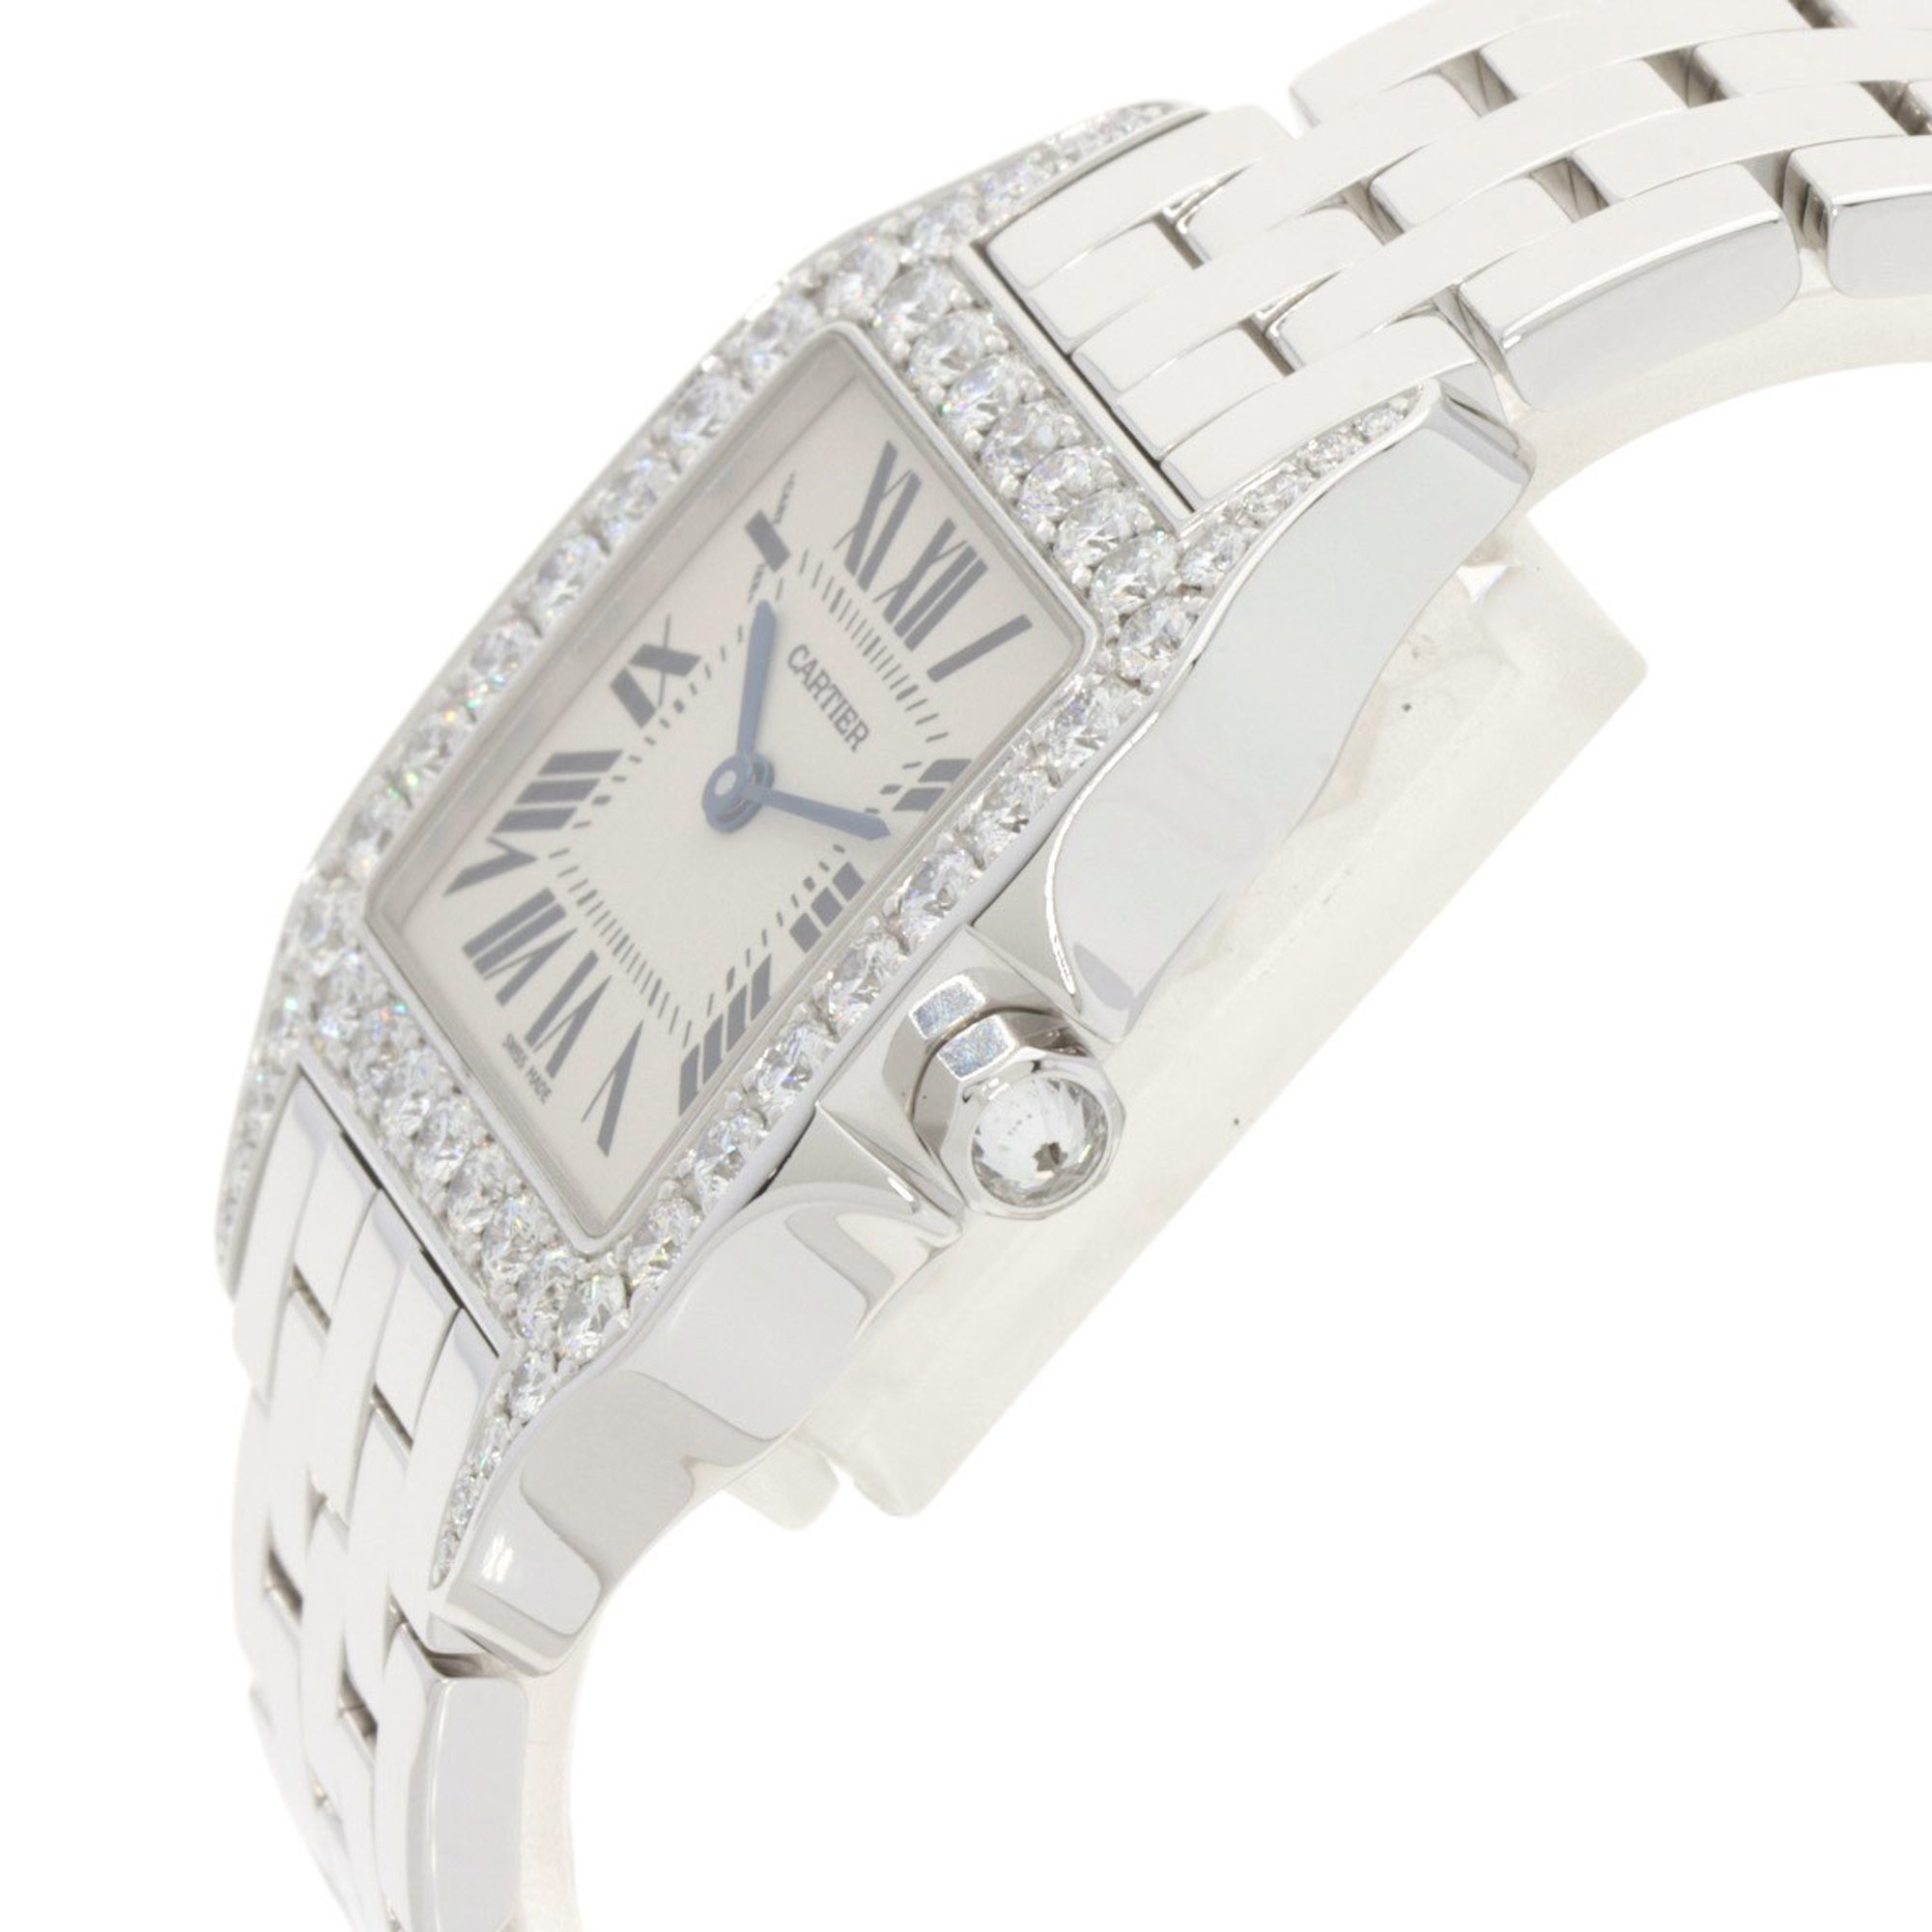 Cartier WF9004Y8 Santos Demoiselle LM Bezel Diamond Watch K18 White Gold K18WG Women's CARTIER